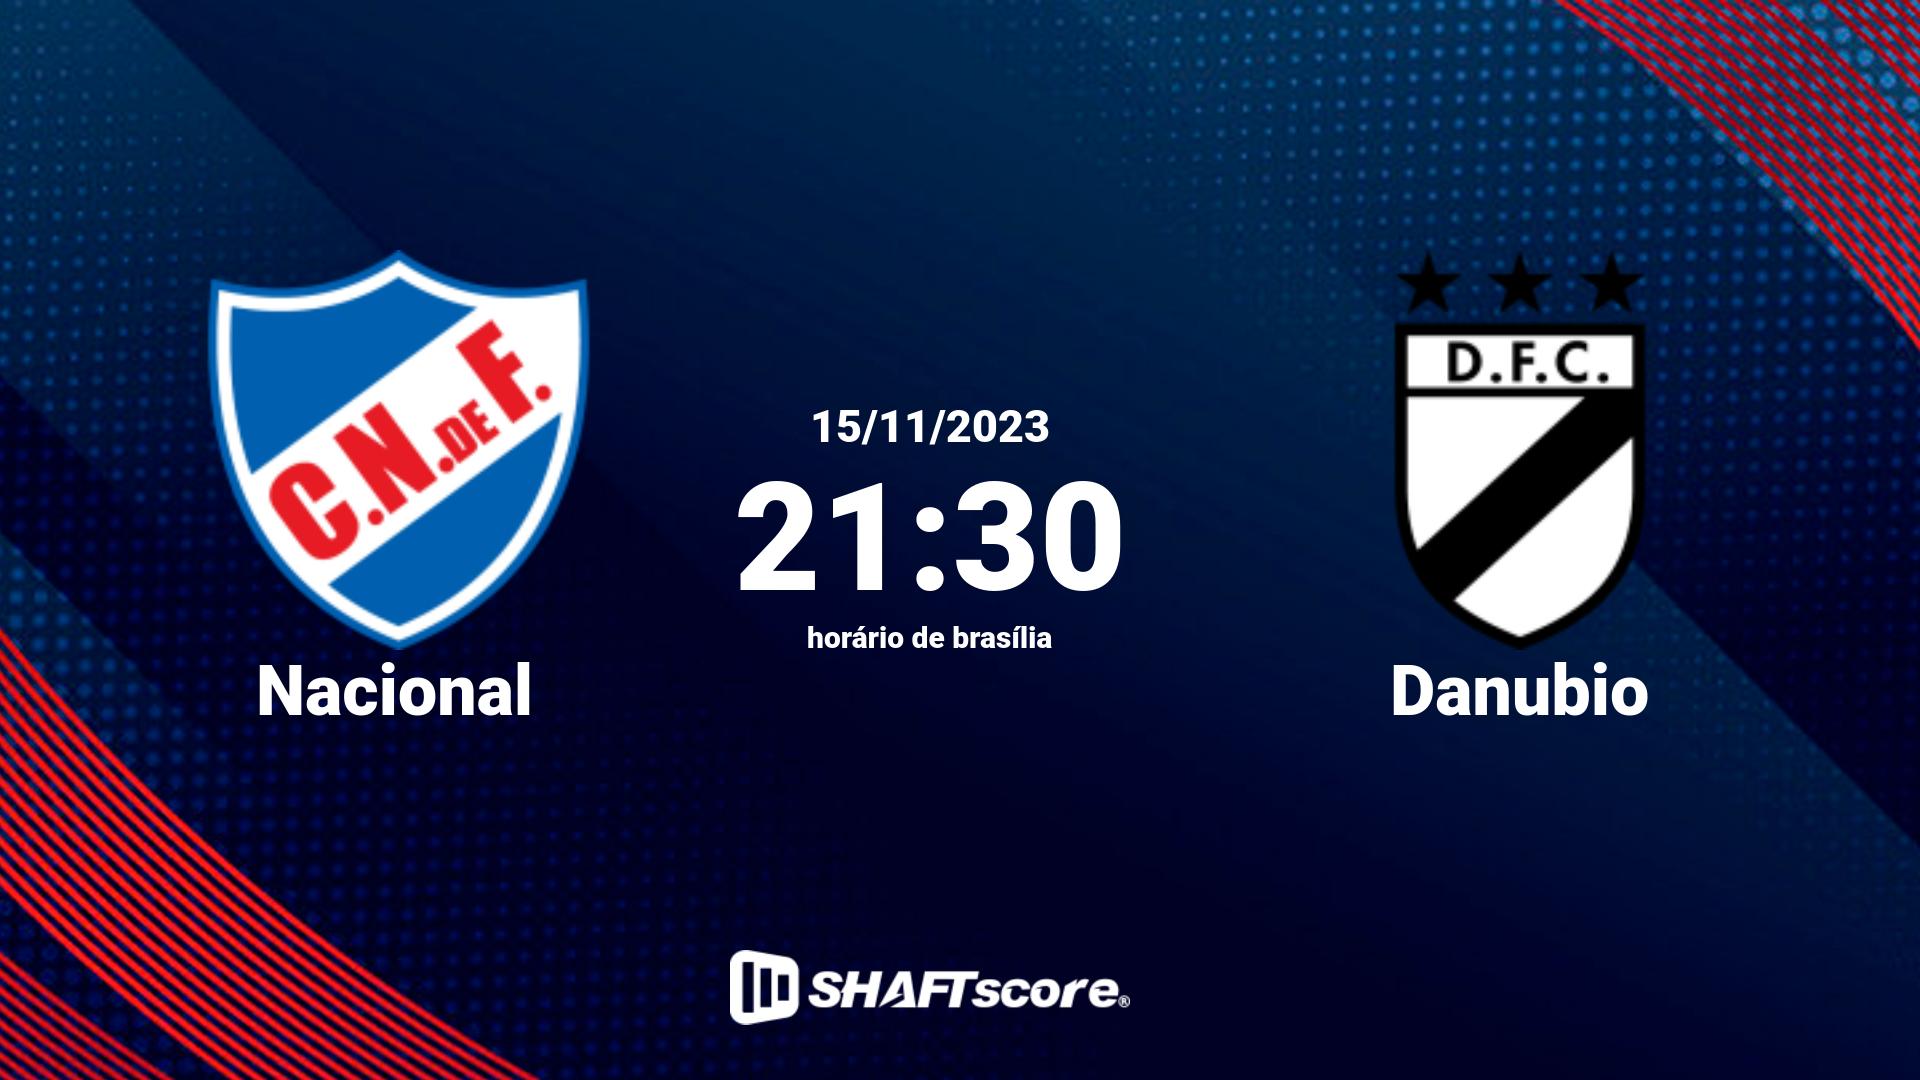 Estatísticas do jogo Nacional vs Danubio 15.11 21:30